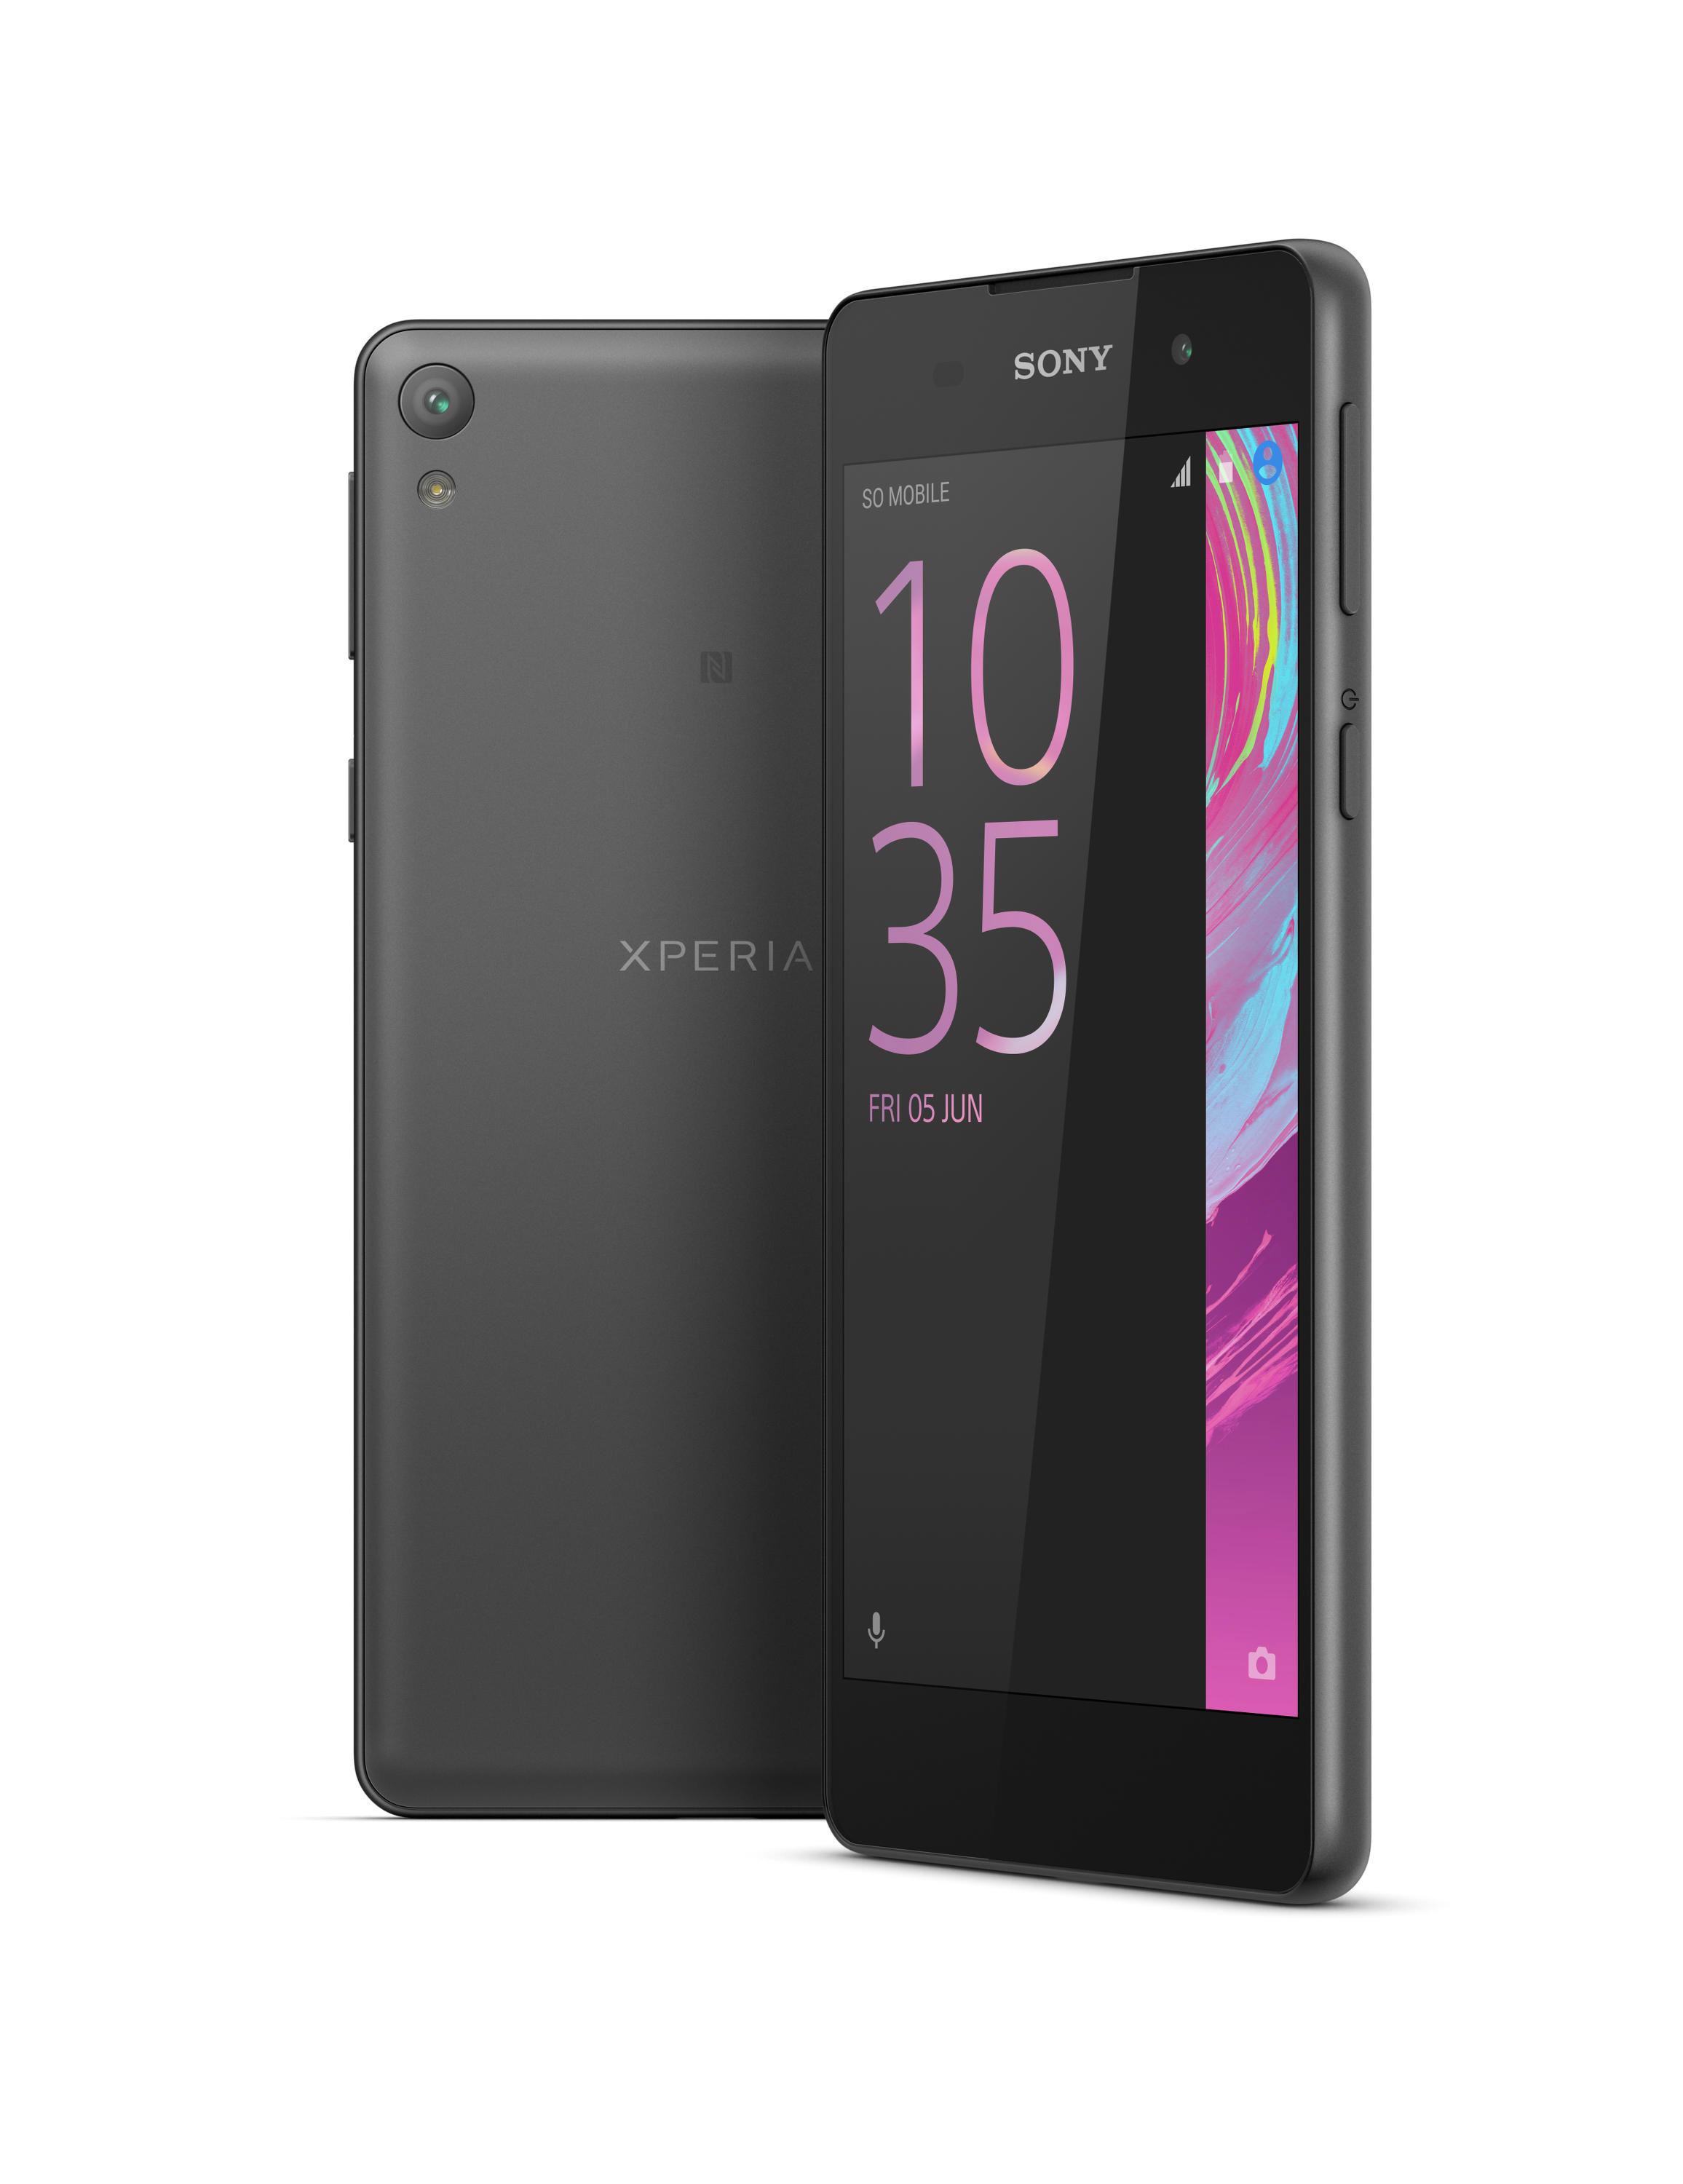 Sony Xperia E5 es oficial